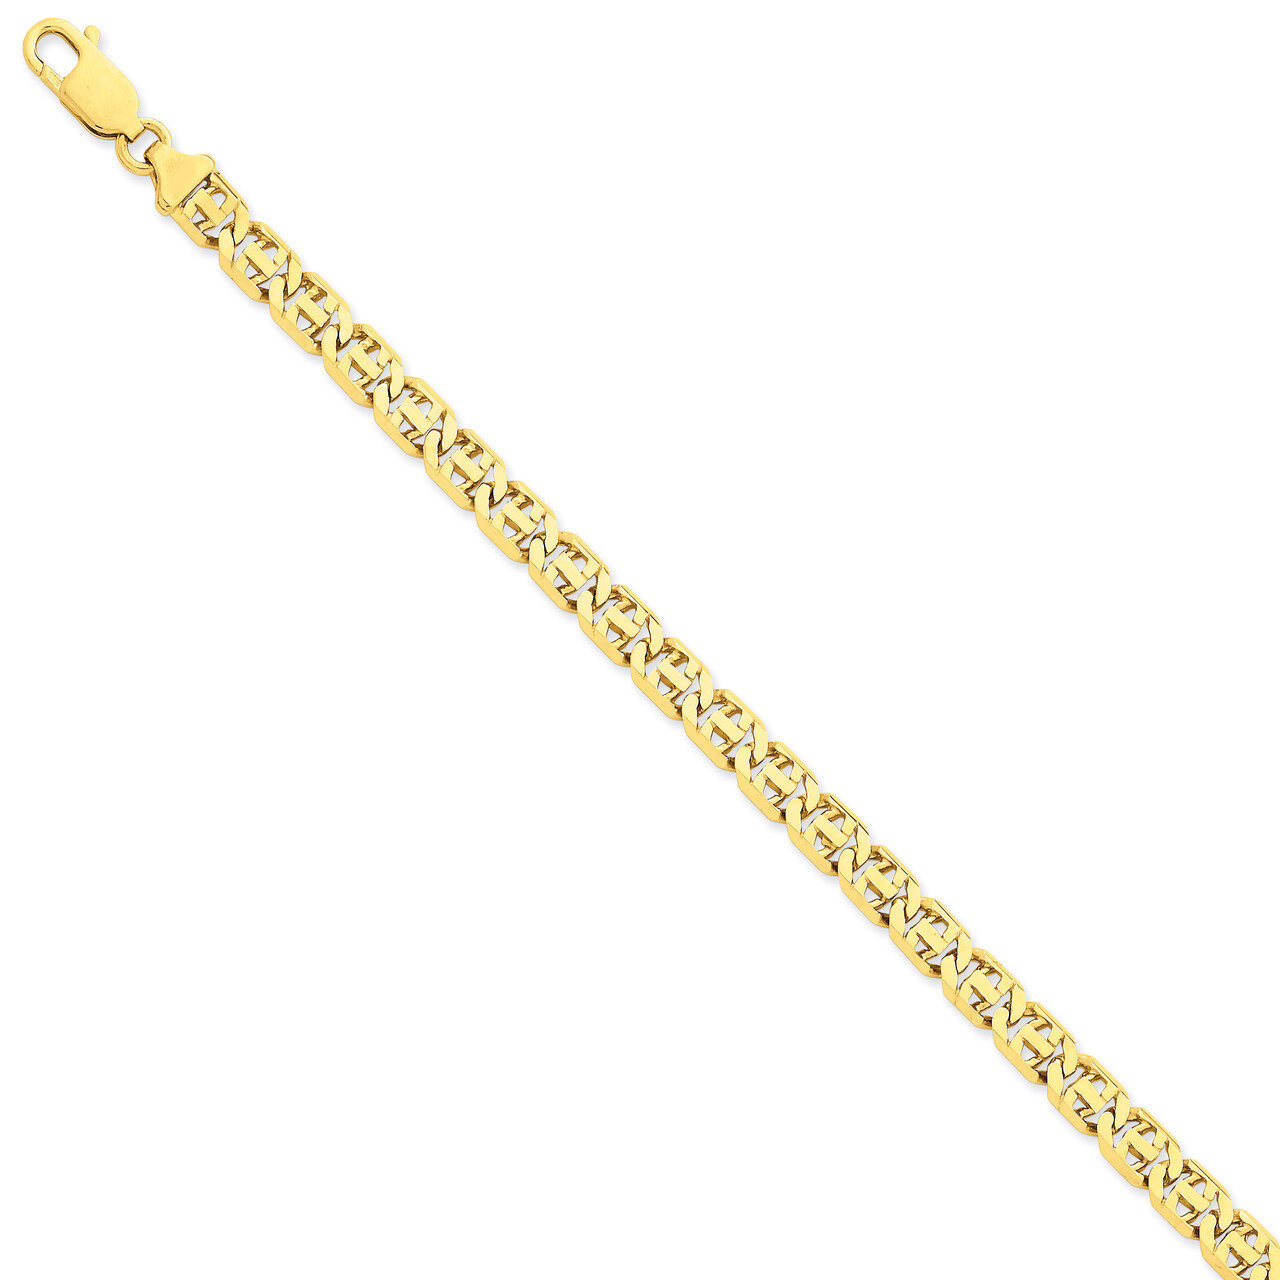 7mm Hand-polished Link Necklace 20 Inch 14k Gold LK163-20